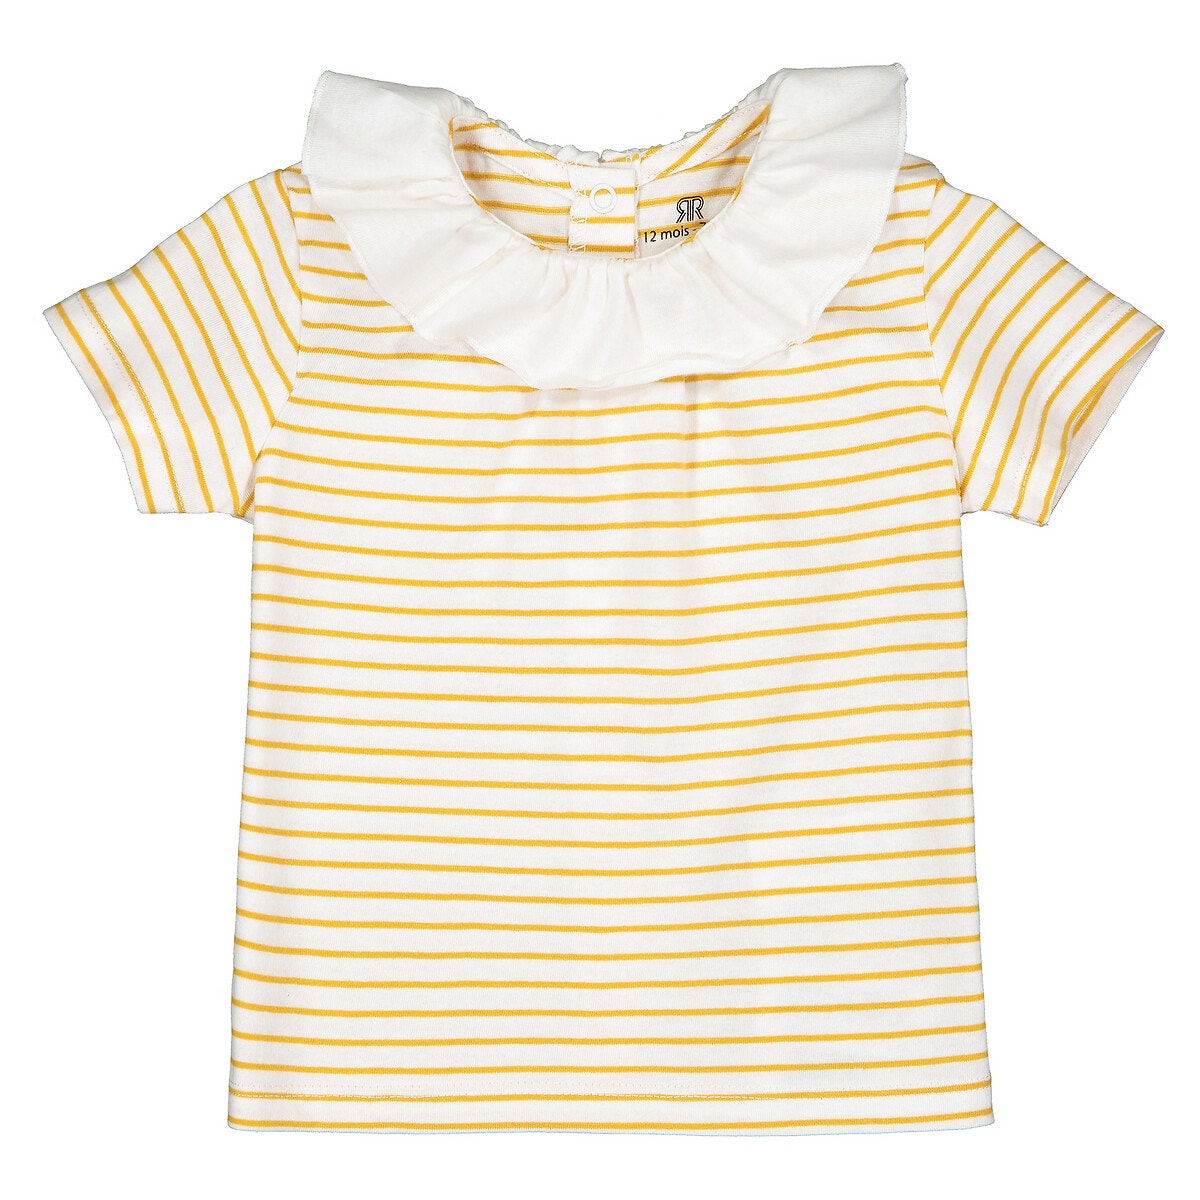 ΠΑΙΔΙ | Βρεφικά | Μπλούζες & Πουκάμισα | T-shirts Ριγέ μπλούζα με στρογγυλό γιακά από βιολογικό βαμβάκι, 1 μηνός - 2 ετών